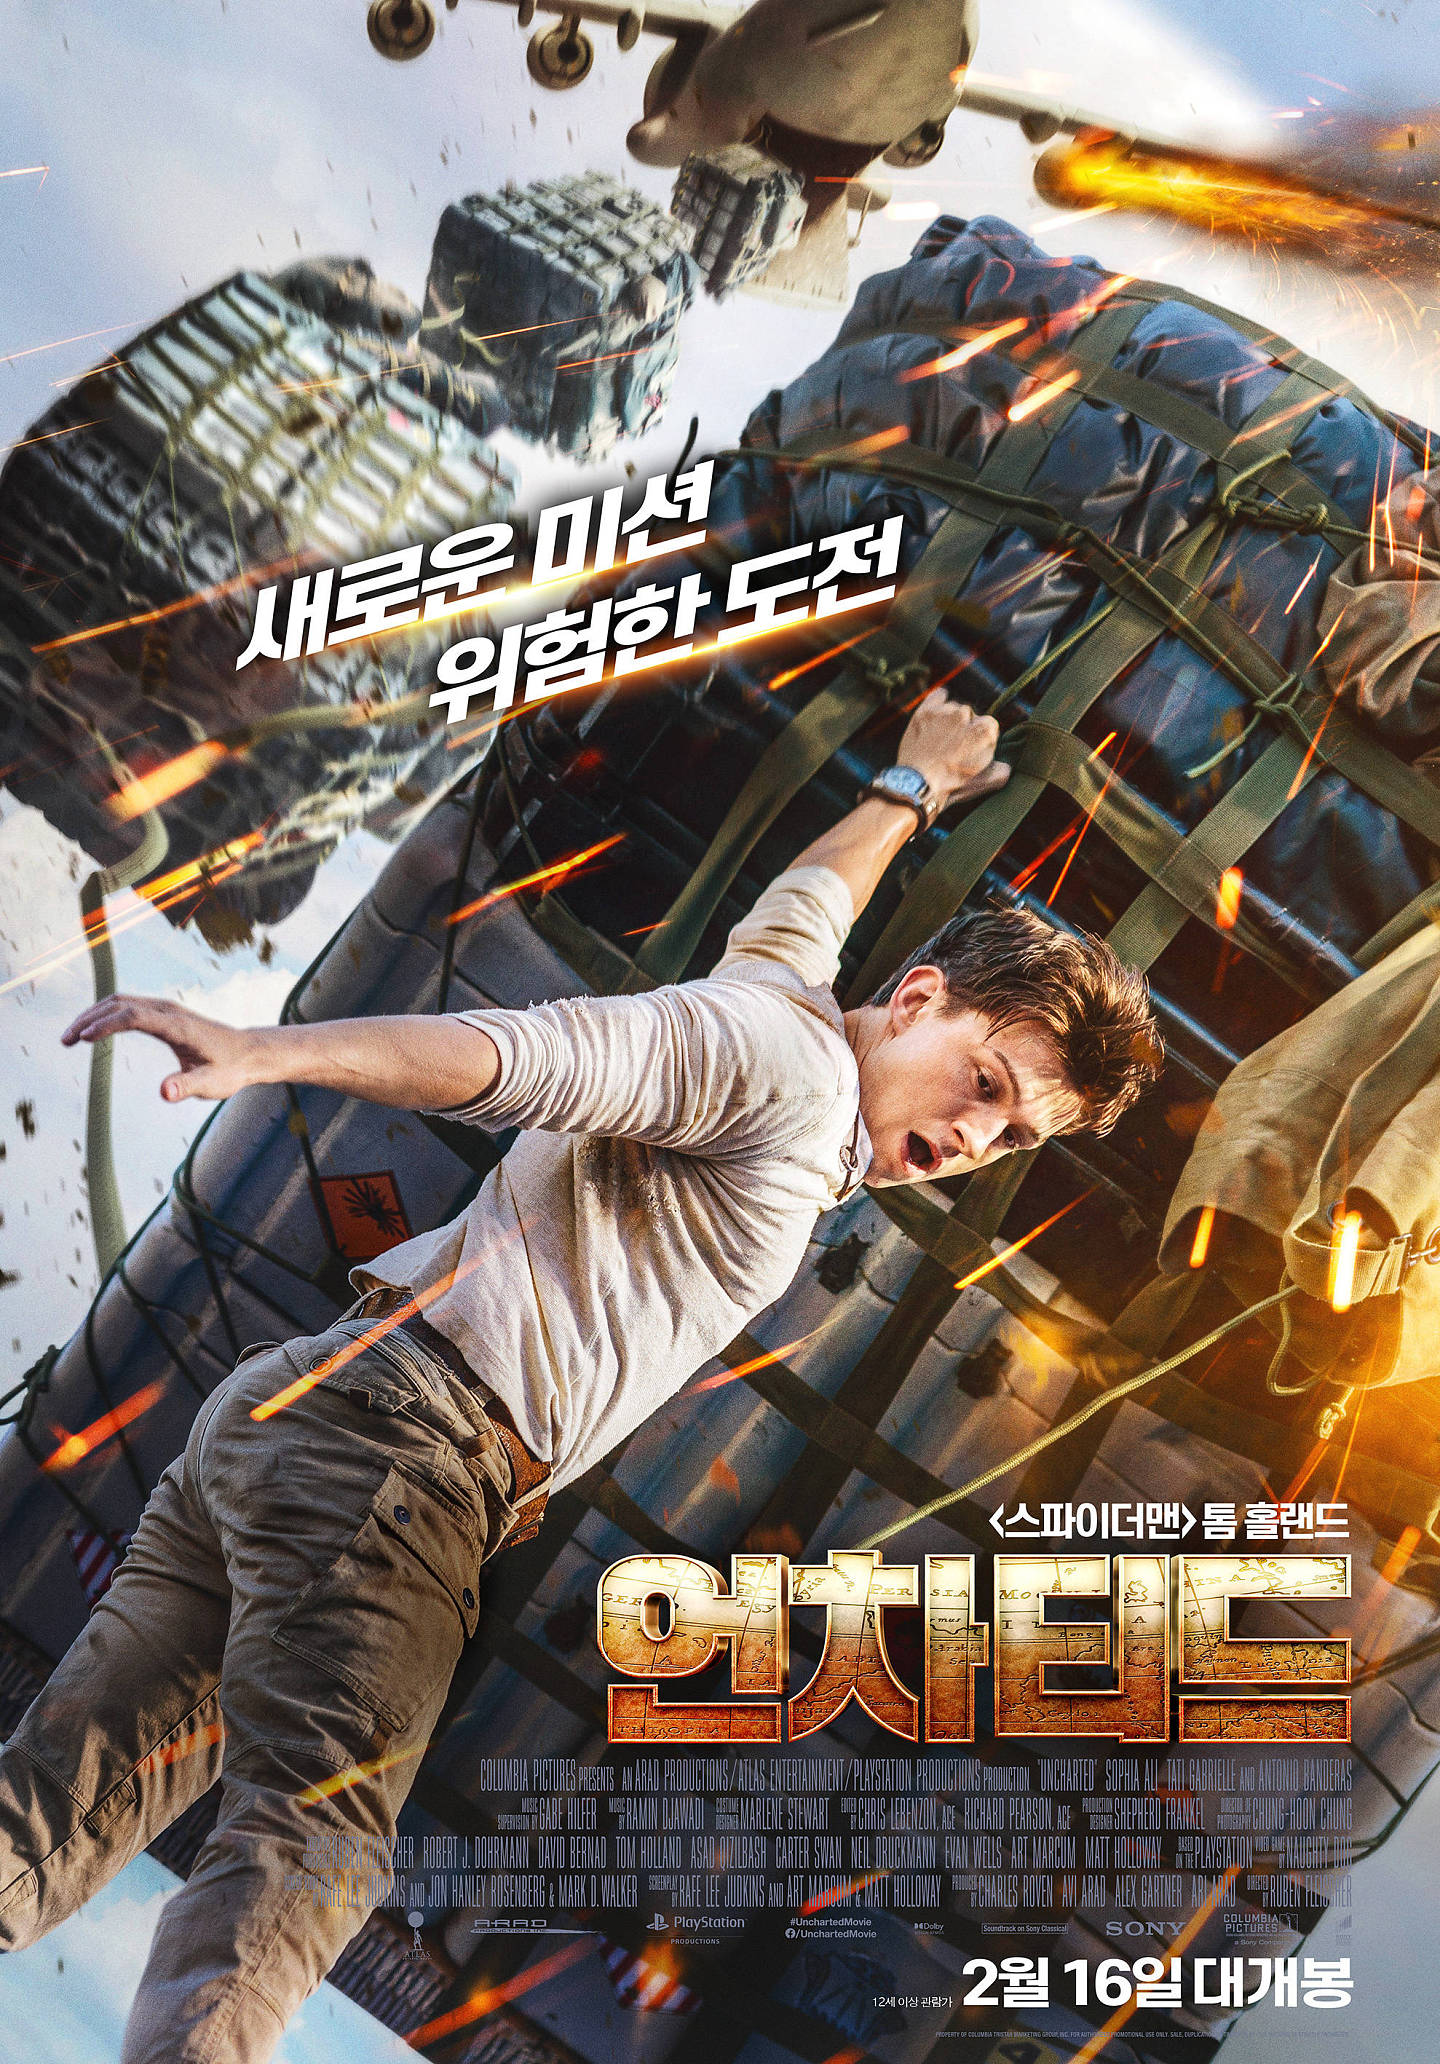 美国电影《神秘海域》夺韩国周末票房冠军 《咒术回战 0》名列第二位 - 1